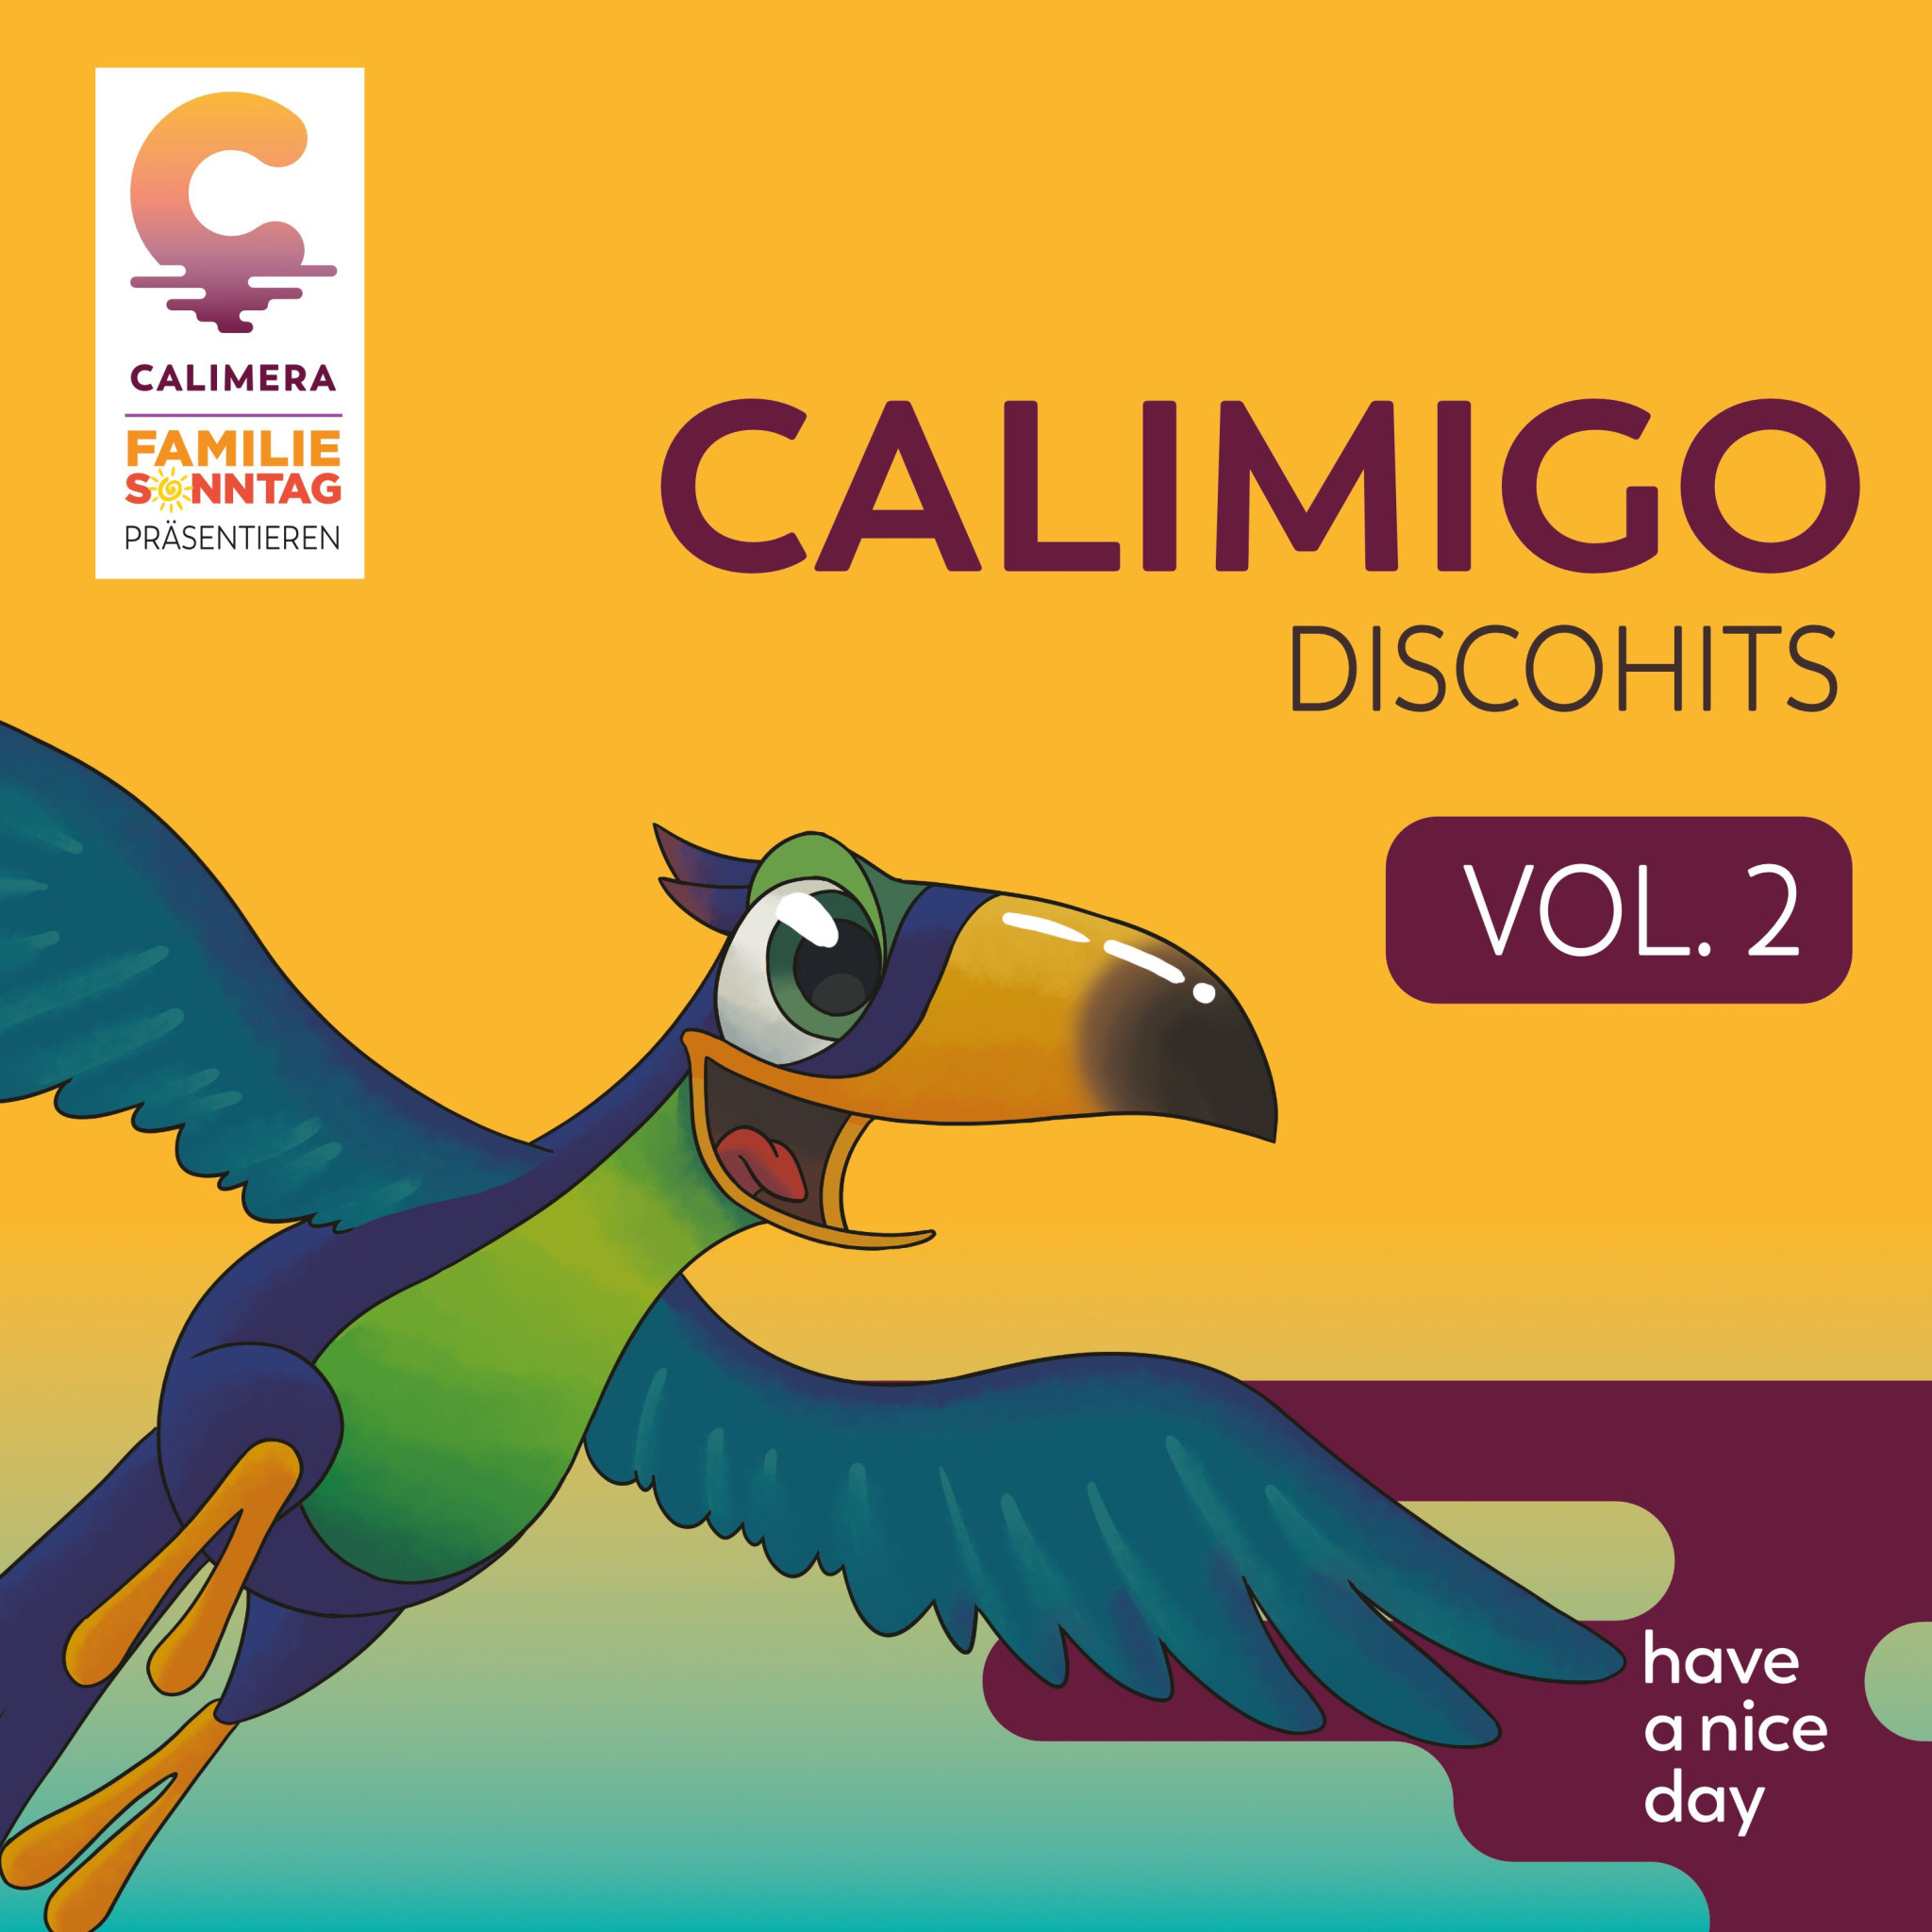 Calimigo Discohits Vol 2 Cover.jpg